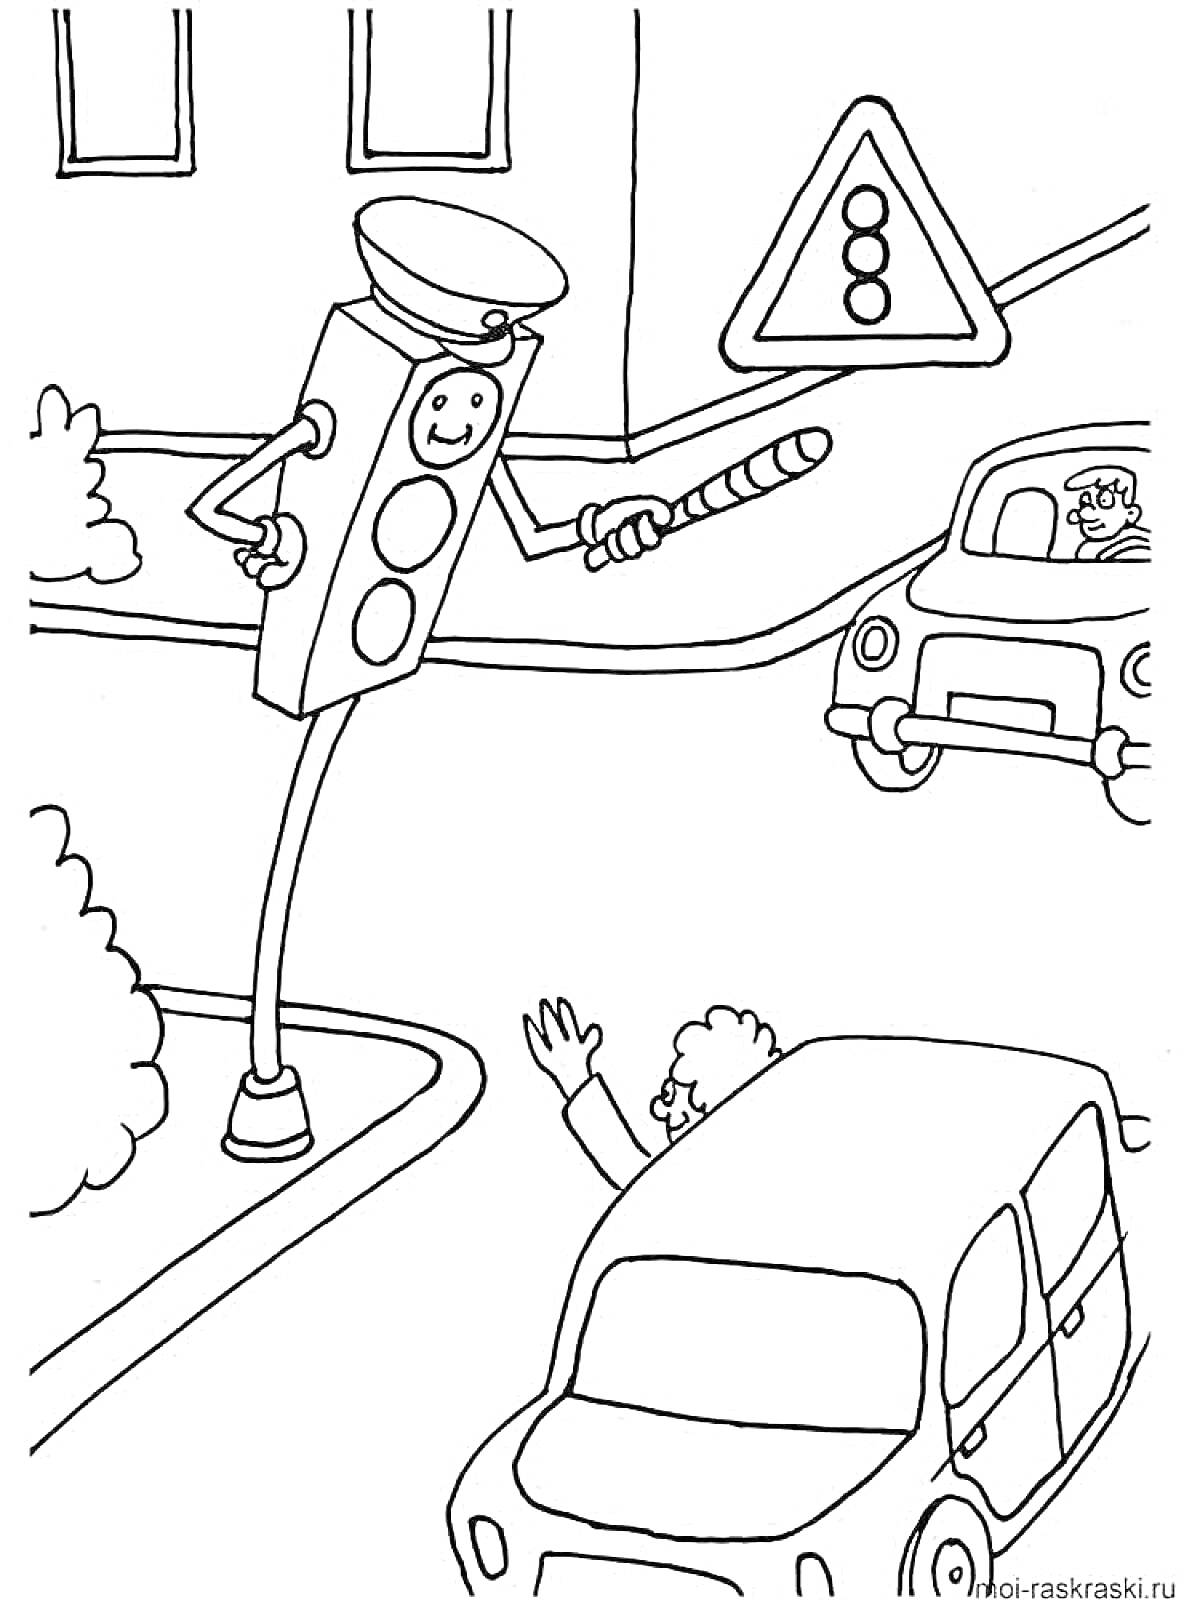 Раскраска Светофор-инспектор на перекрестке. Водитель, пешеход и дорожный знак.